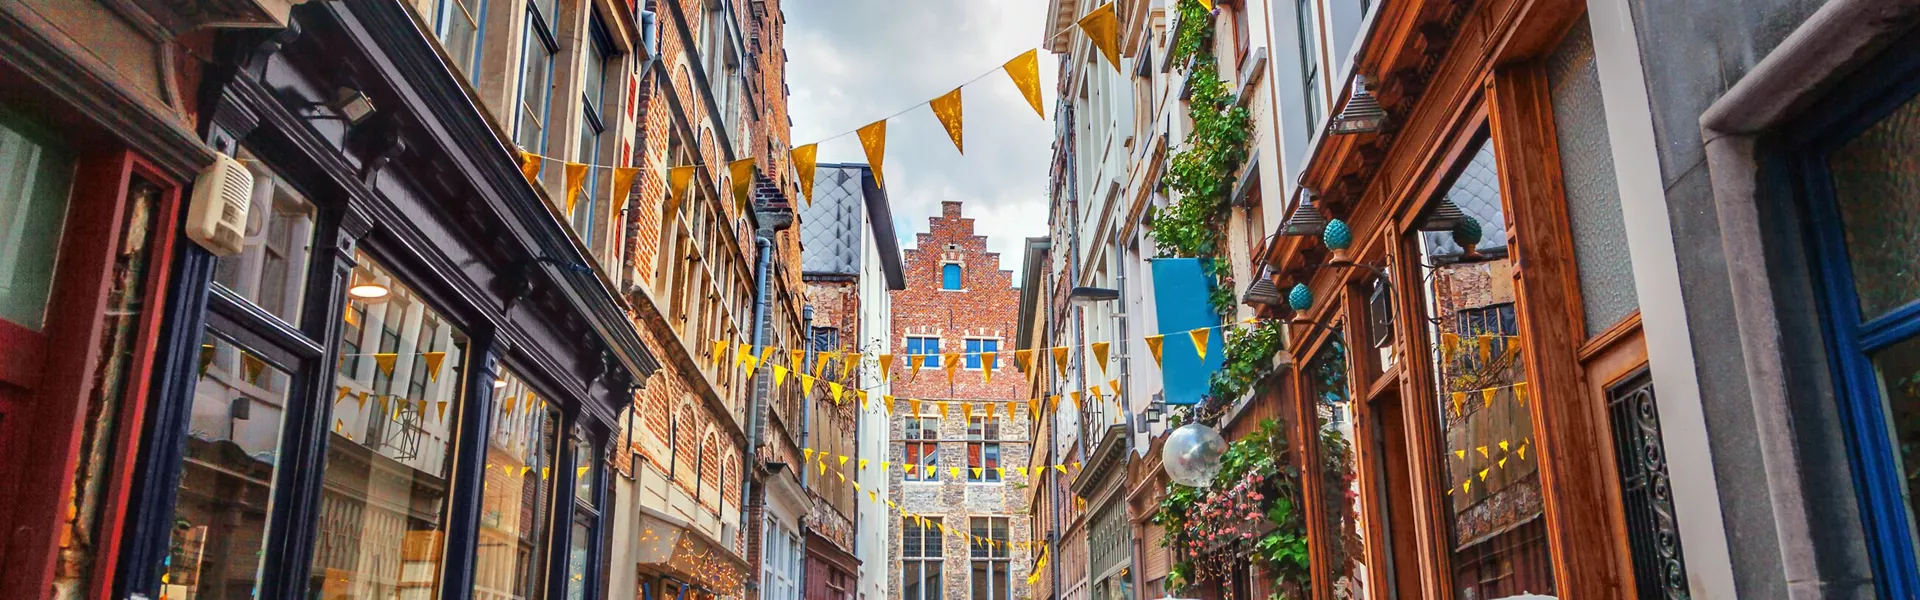 Charming street in Gent, Belgium